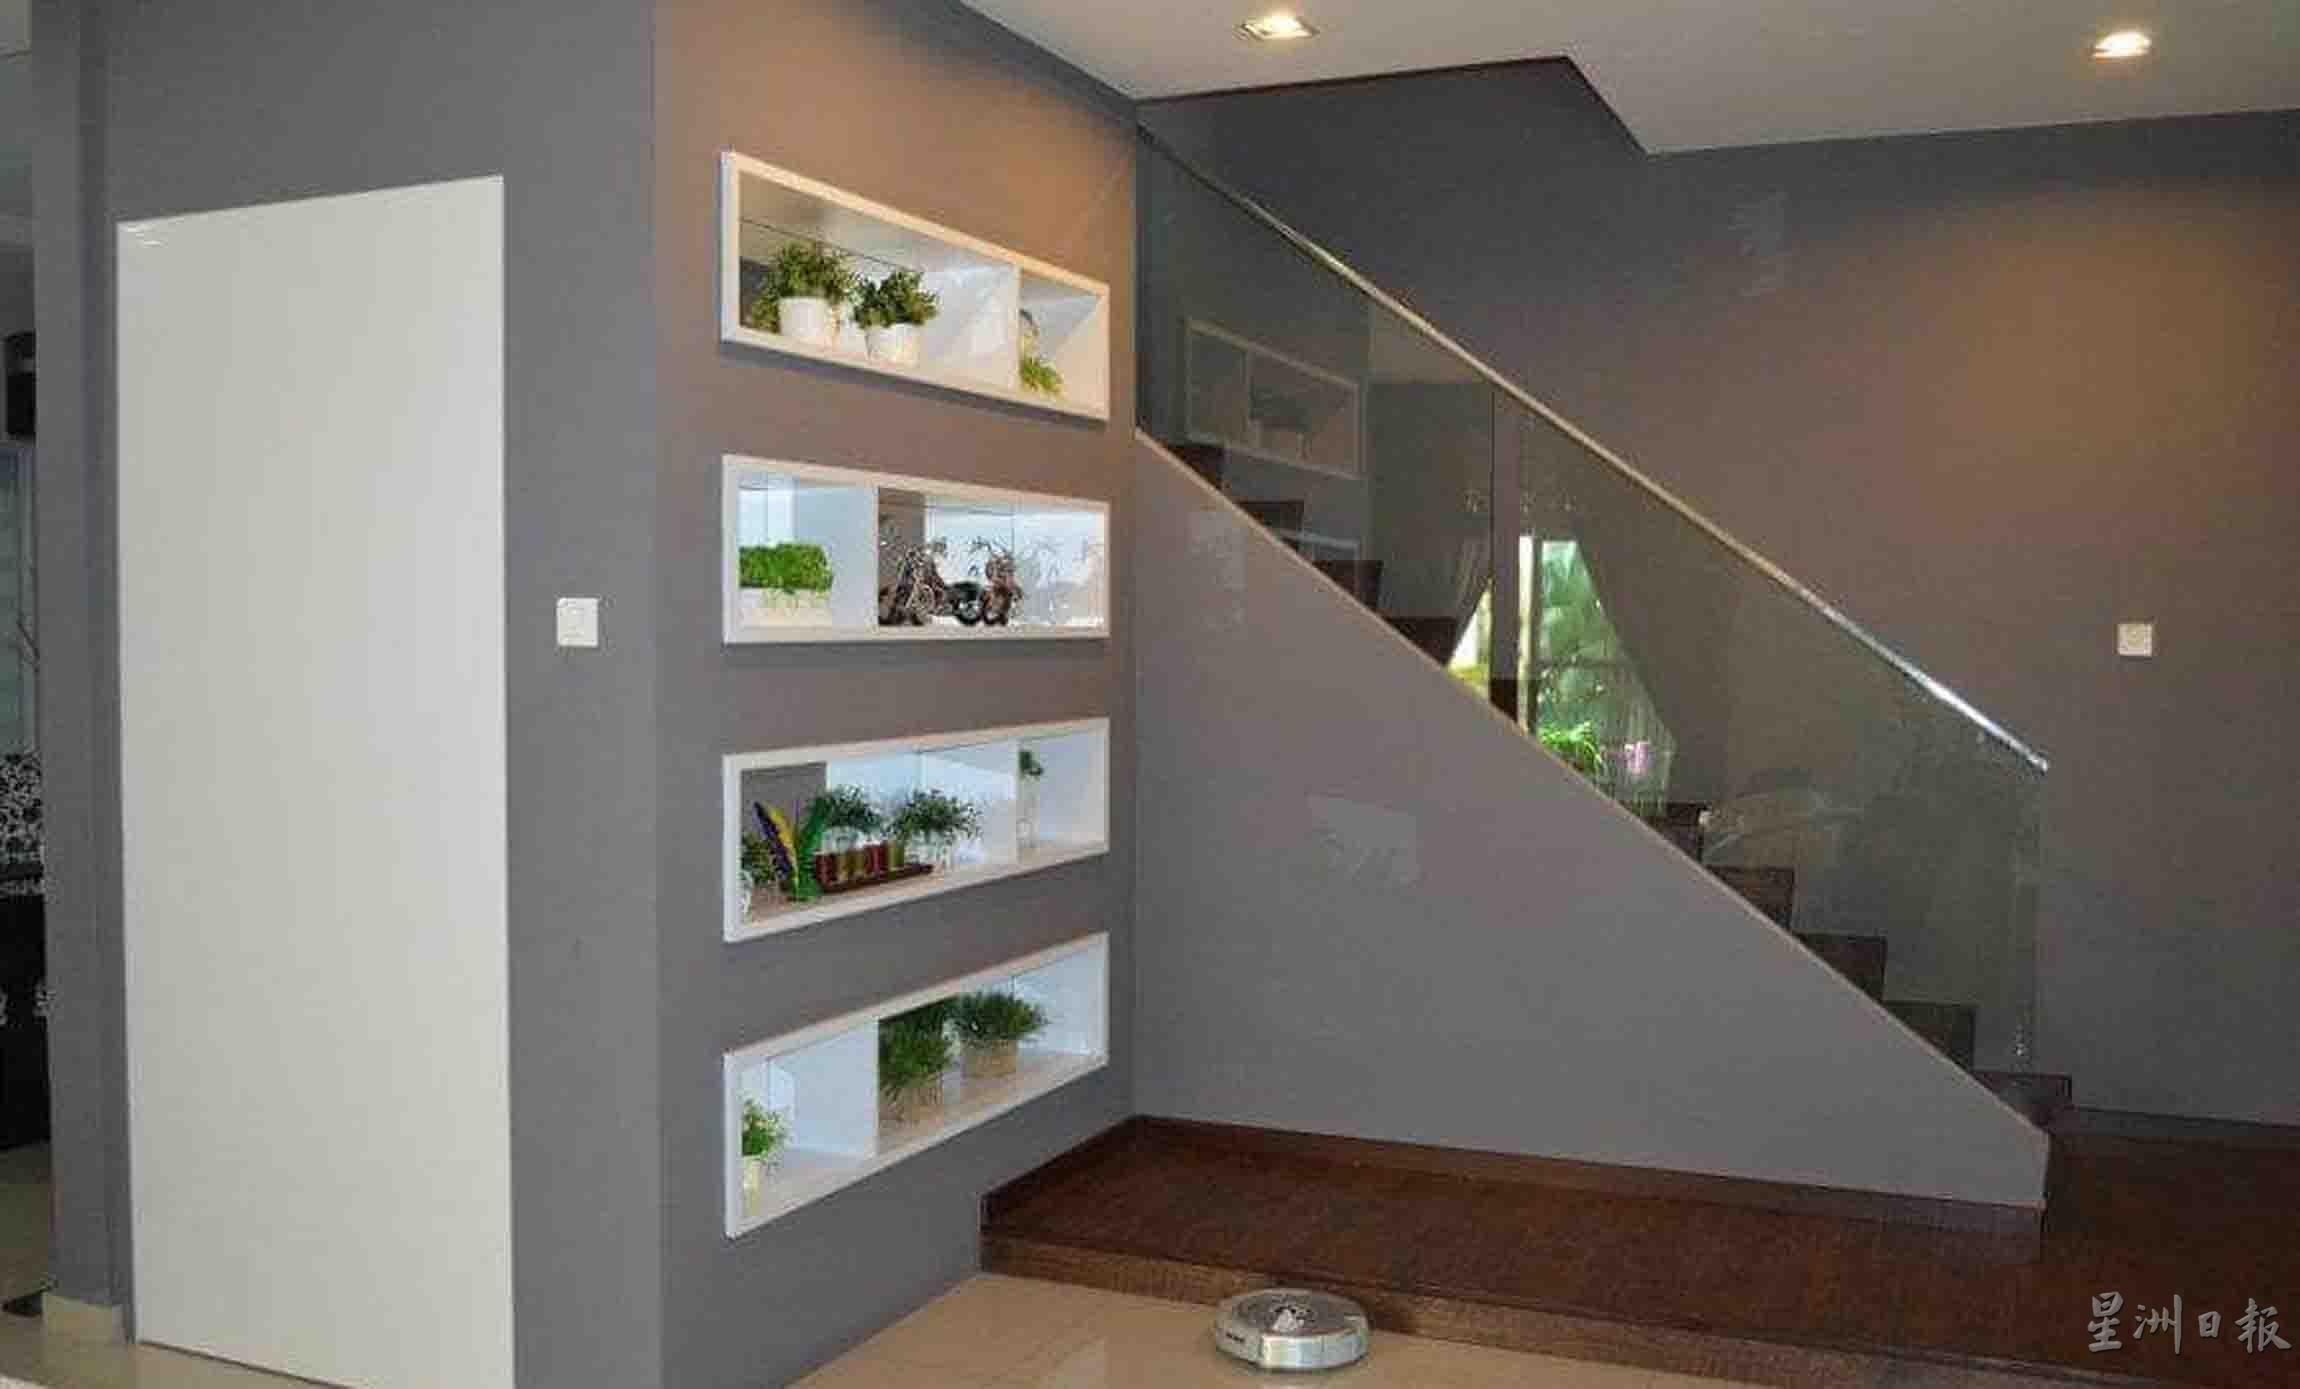 楼梯间的空间，通过家具设计的铺设，让原本无用的空间，成为了储物室及摆设柜台，既实用又美观。